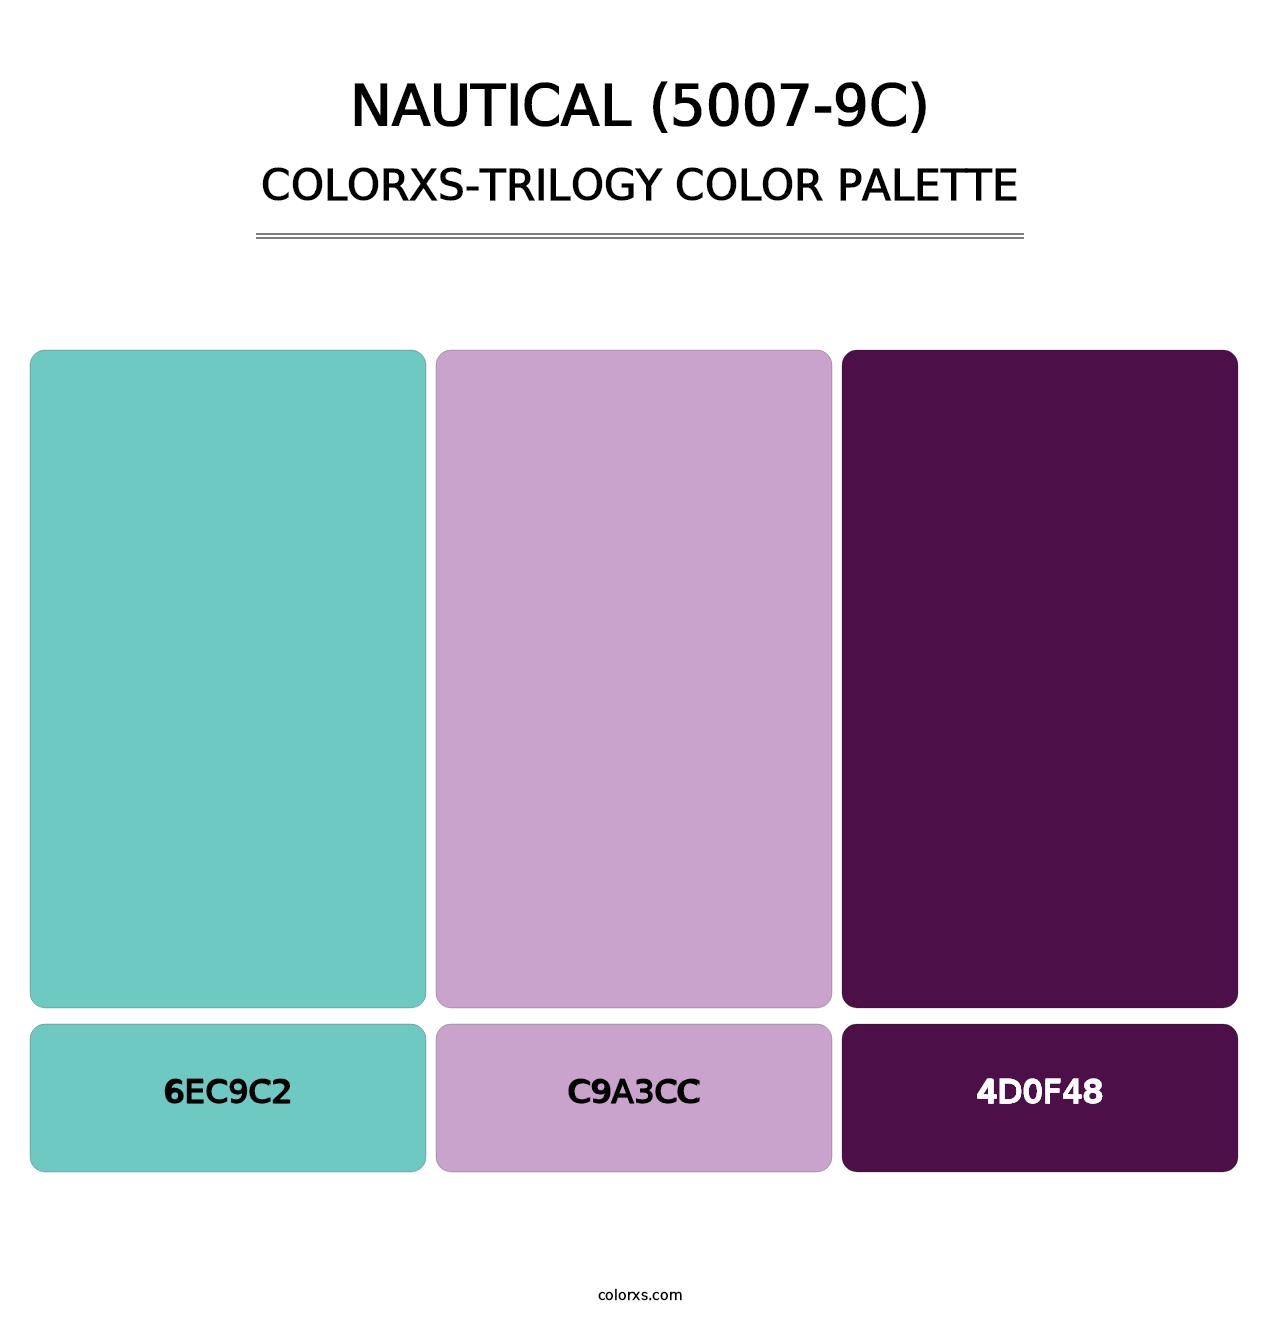 Nautical (5007-9C) - Colorxs Trilogy Palette